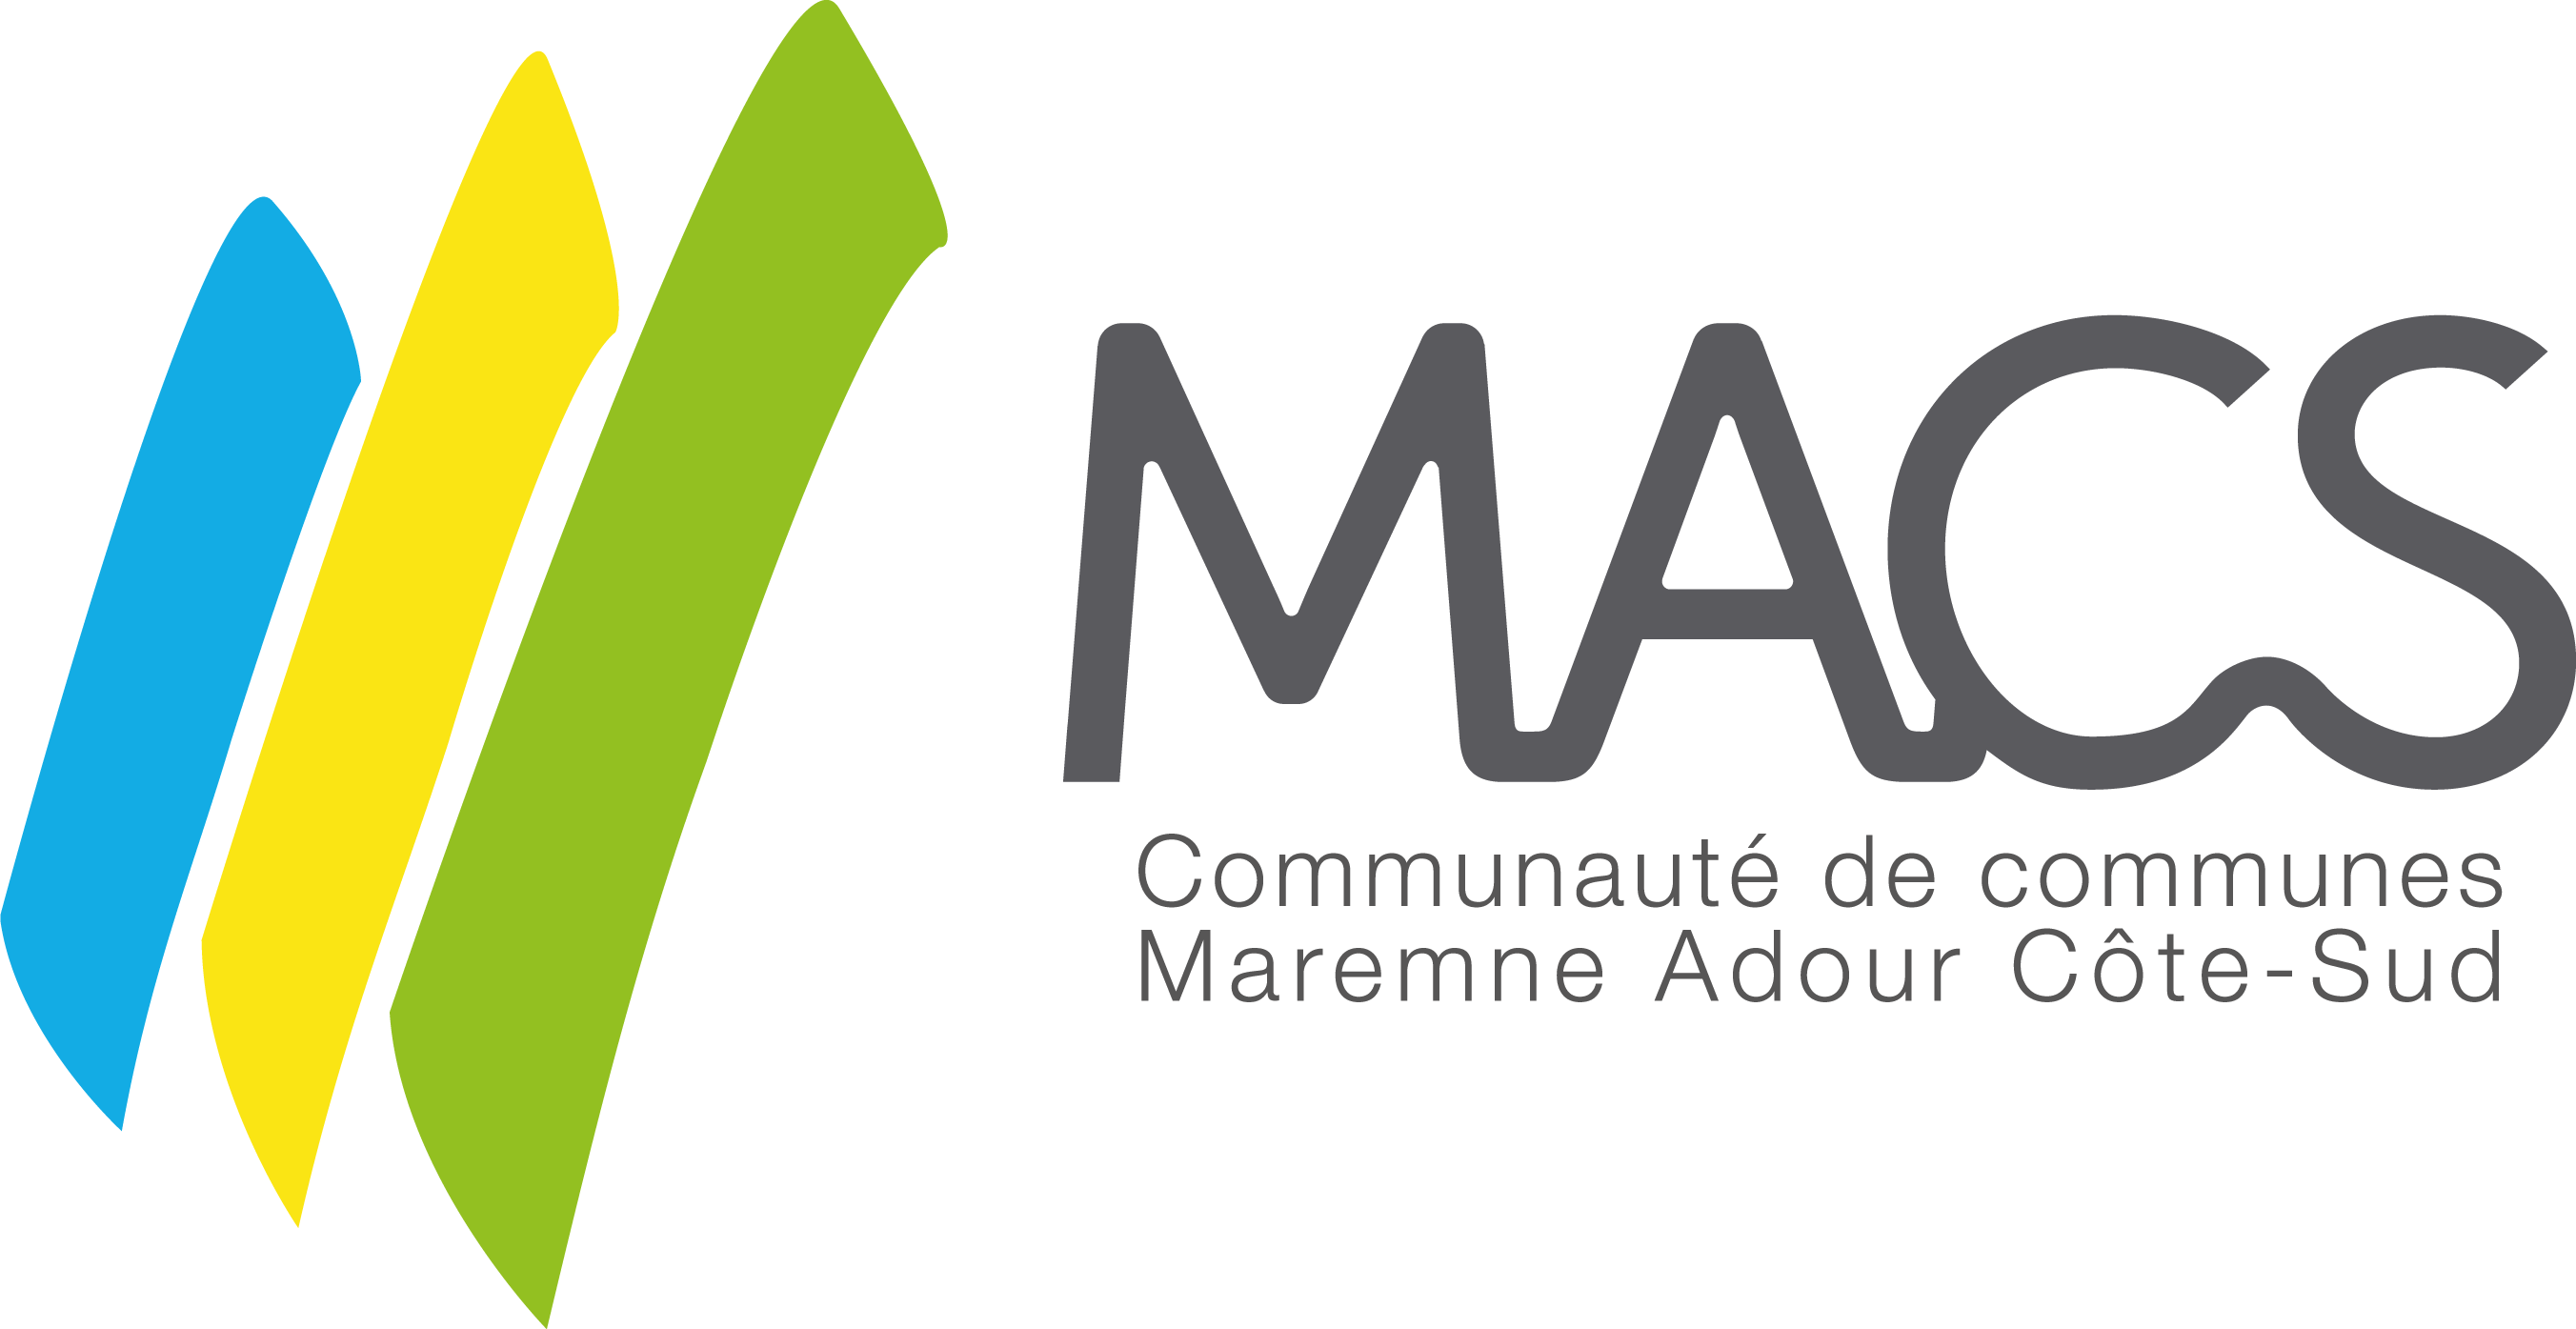 Communauté de Commune Maremne Côte-Sud Adour